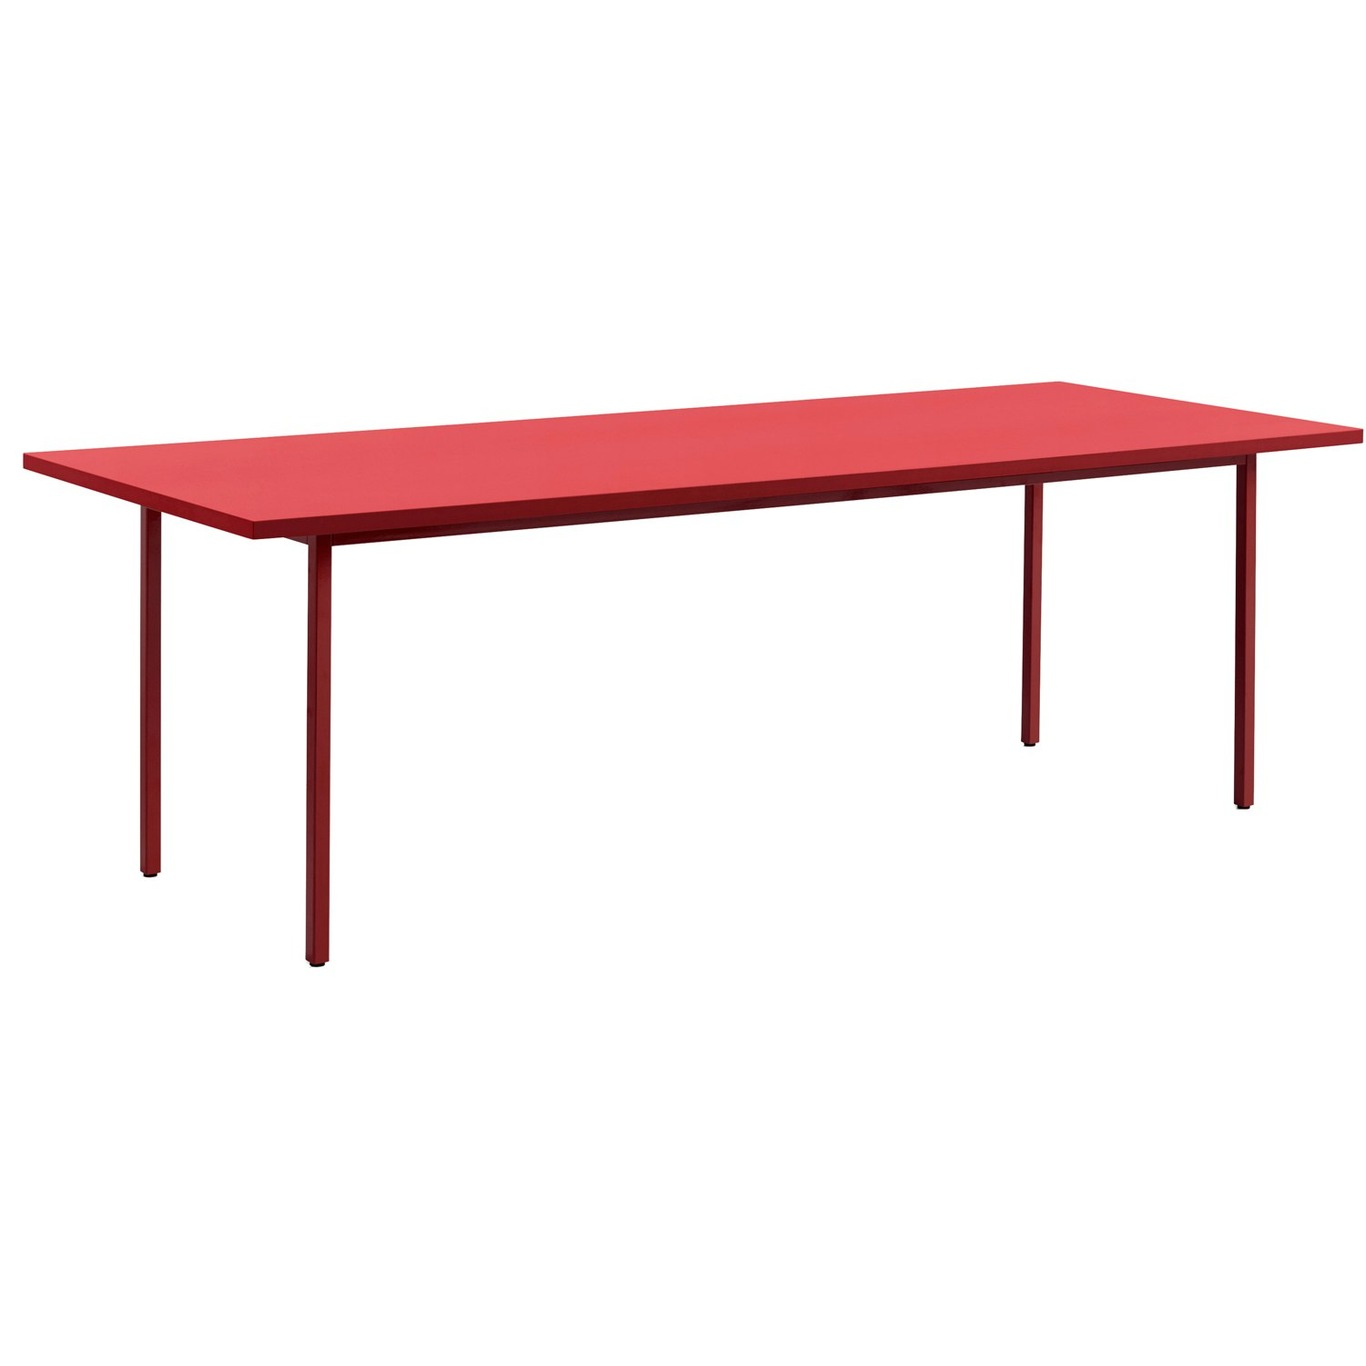 TwoColour Pöytä 240x90 cm, Viininpunainen / Punainen